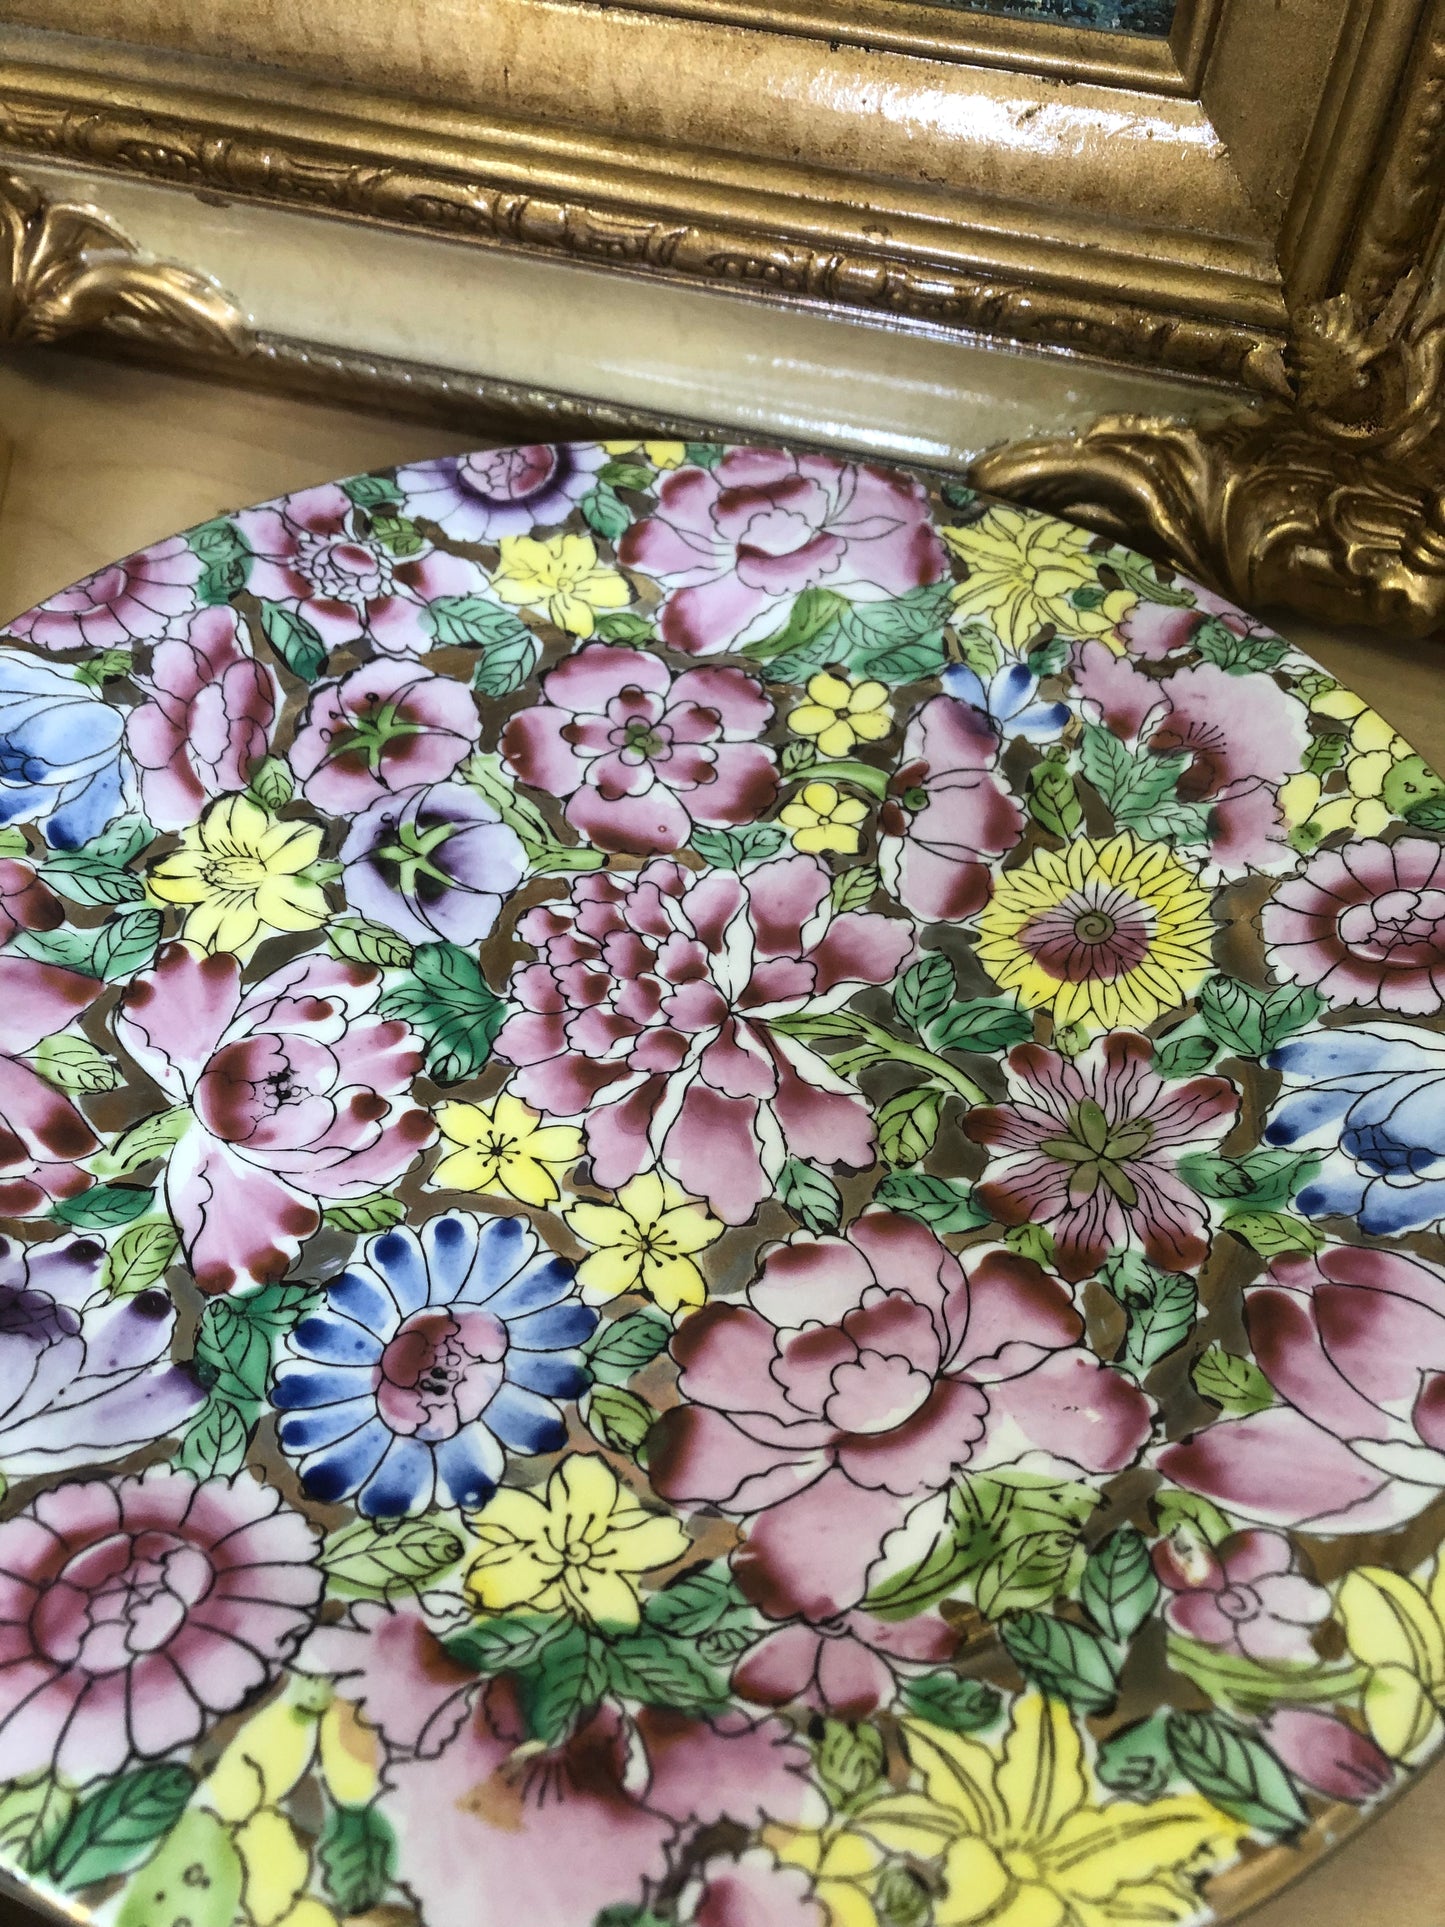 Vintage Mille Fleurs Plate - Excellent Condition!